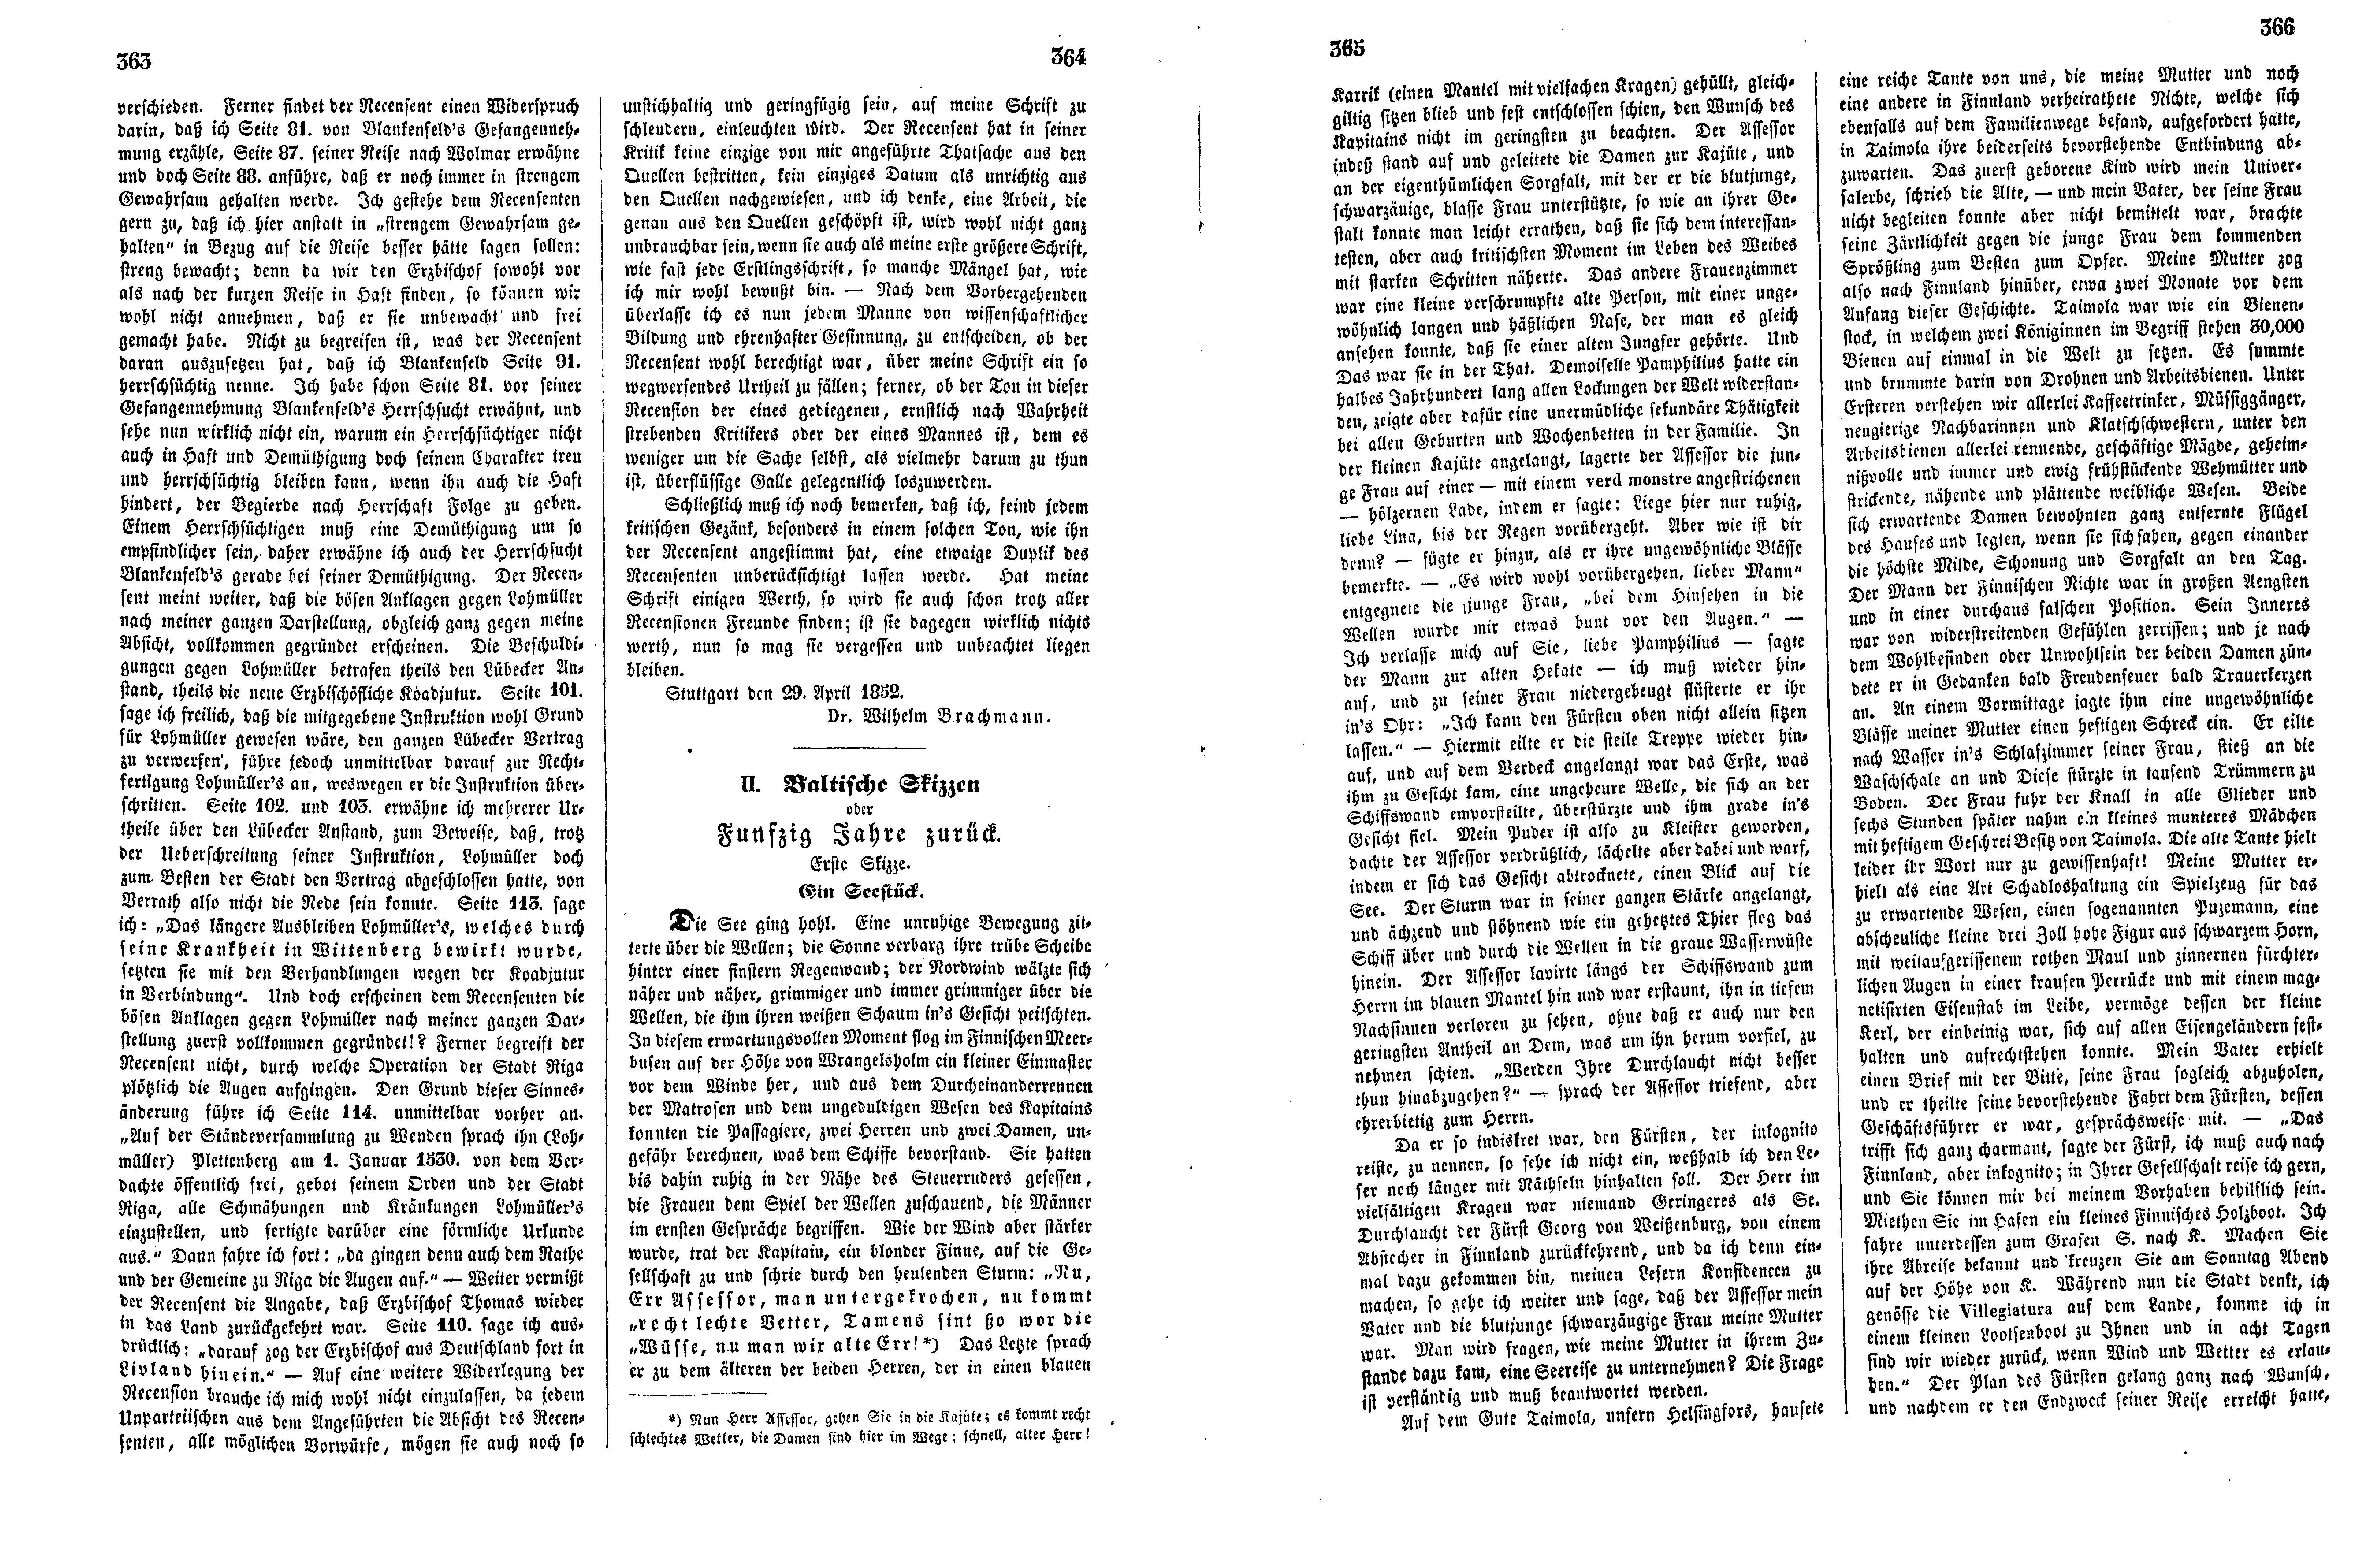 Baltische Skizzen oder Funfzig Jahre zurück [01] (Ein Seestück) (1852) | 1. (363-366) Основной текст